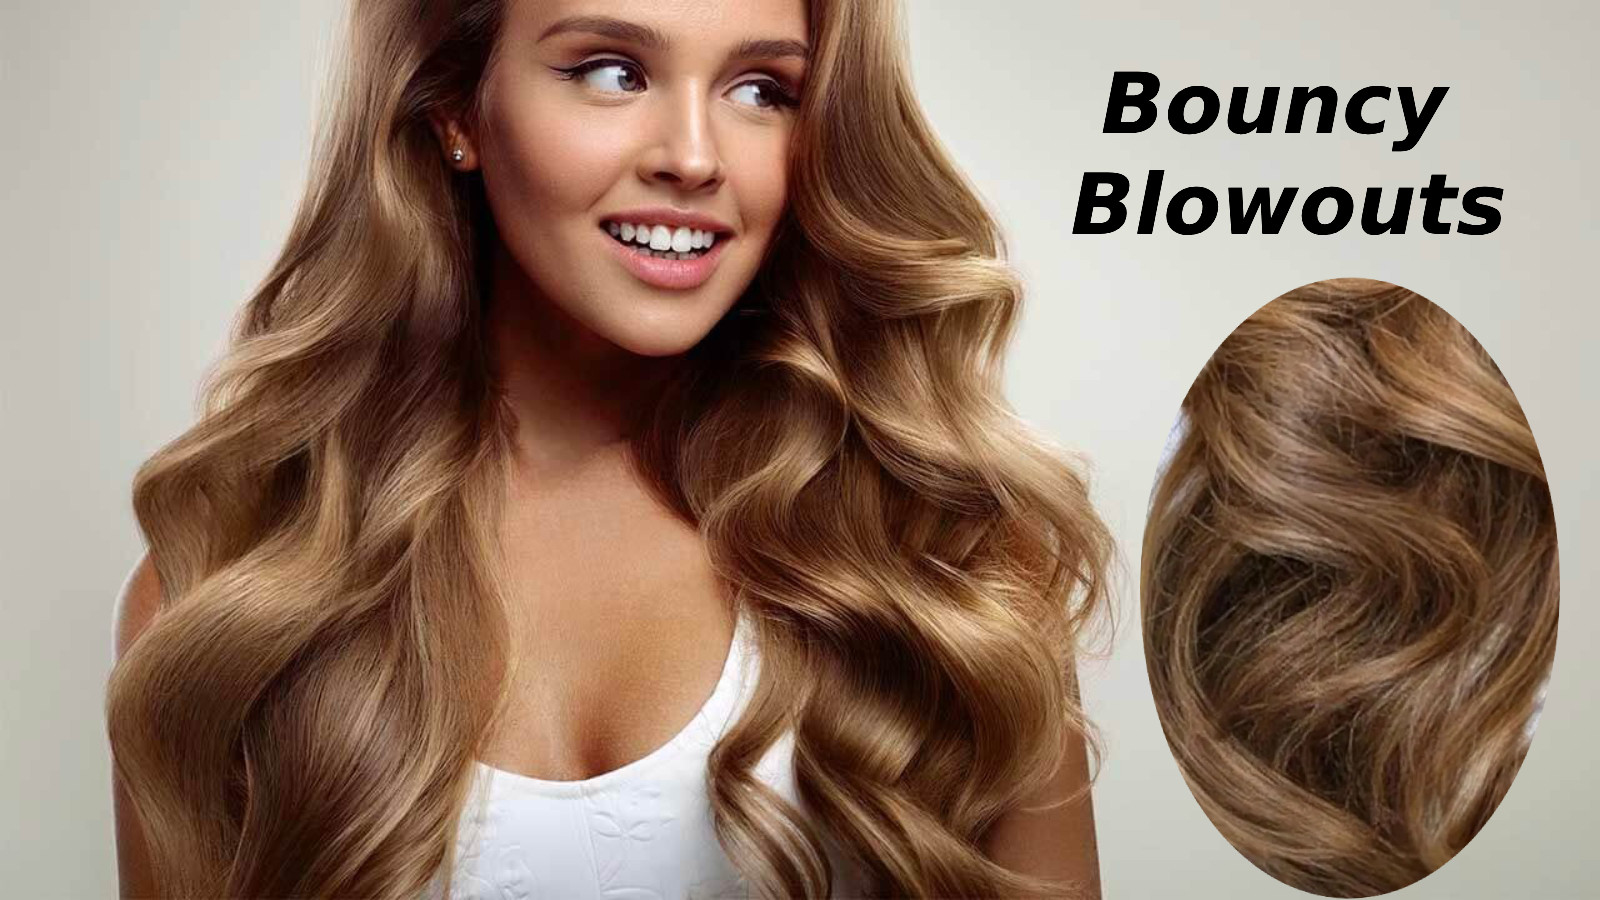 Bouncy Blowouts saç modeli nasıl yapılır?